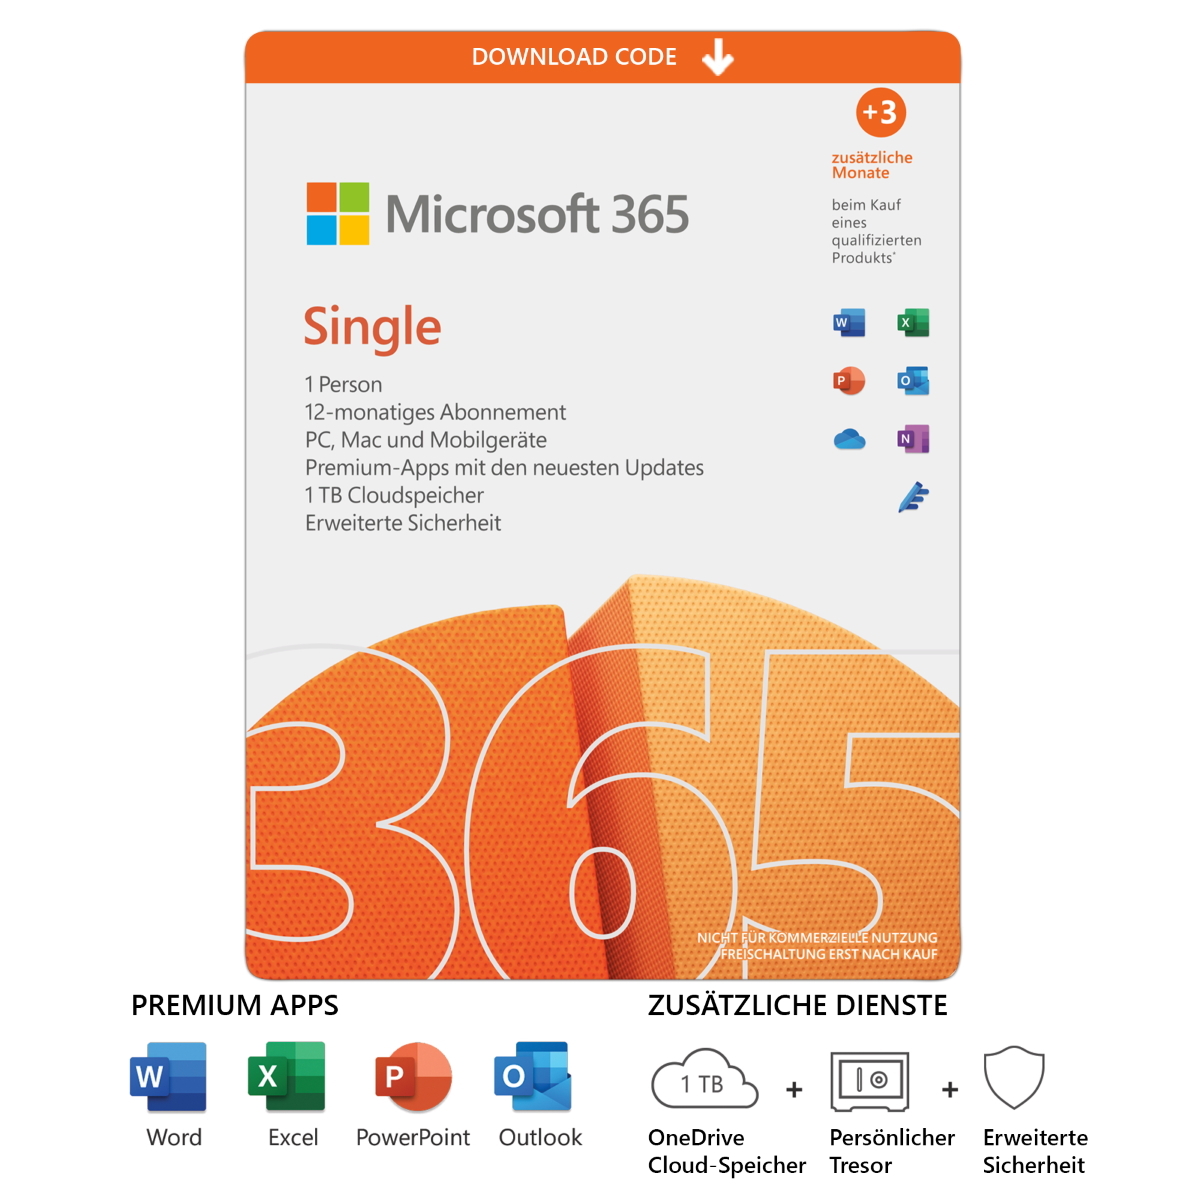 Microsoft 365 Single [1 Benutzer // 1 Jahr + 3 Monate extra] inkl. Premium Office Apps, 1TB Cloud-Speicher, erweiterte Sicherheit und vieles mehr von Microsoft